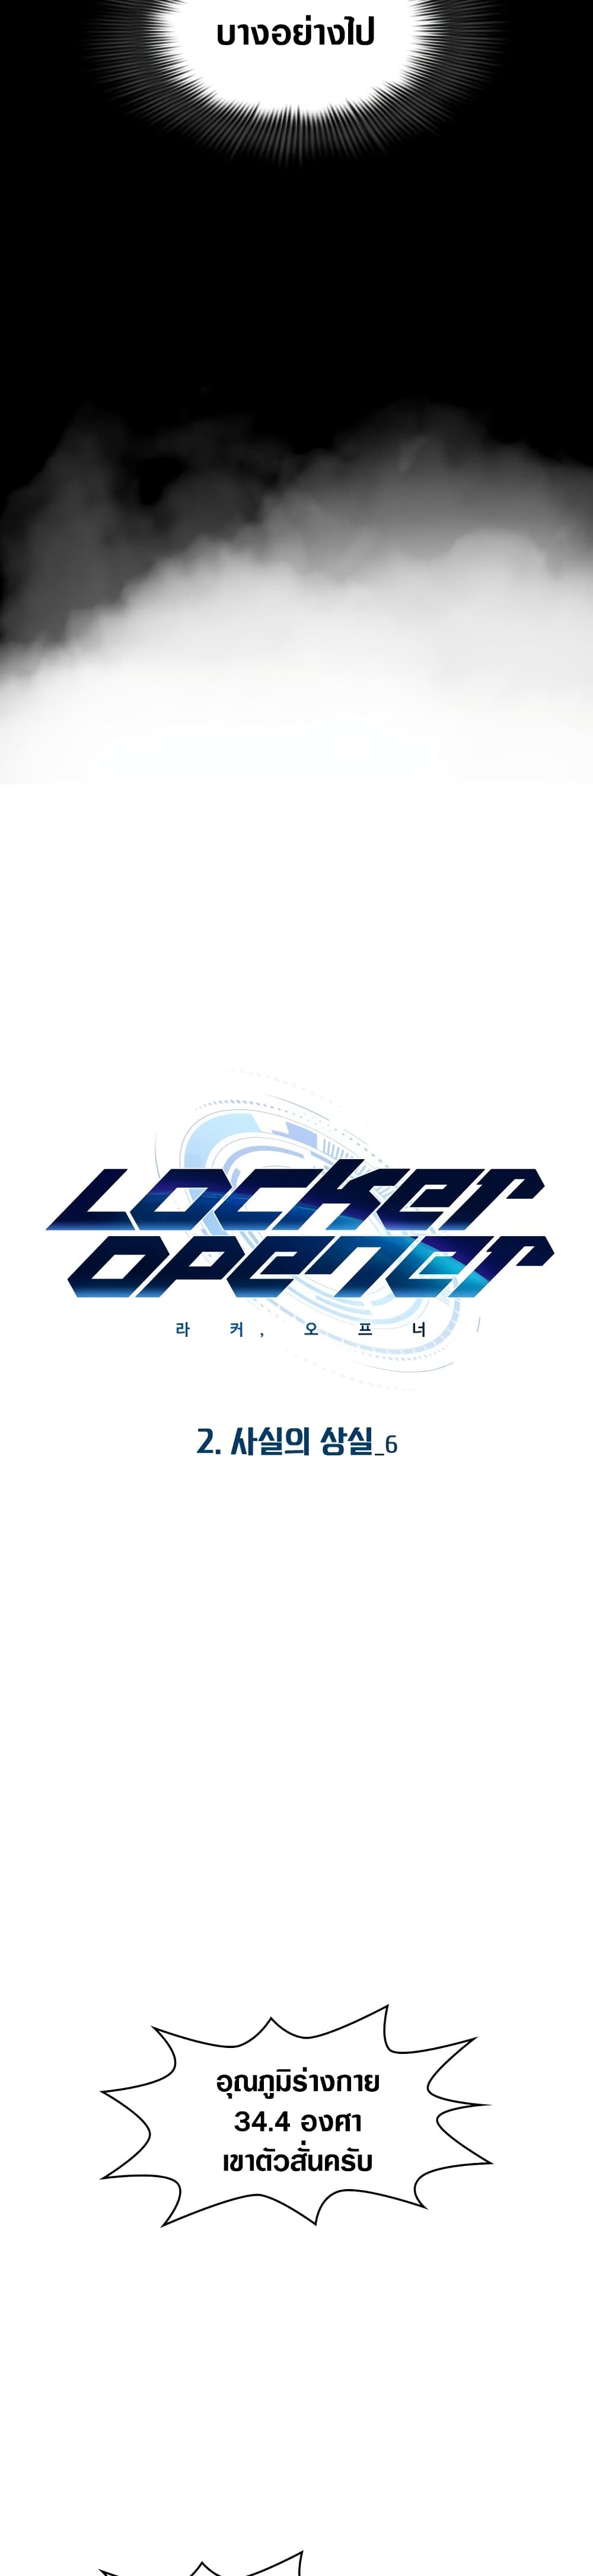 Locker & Opener 7 06